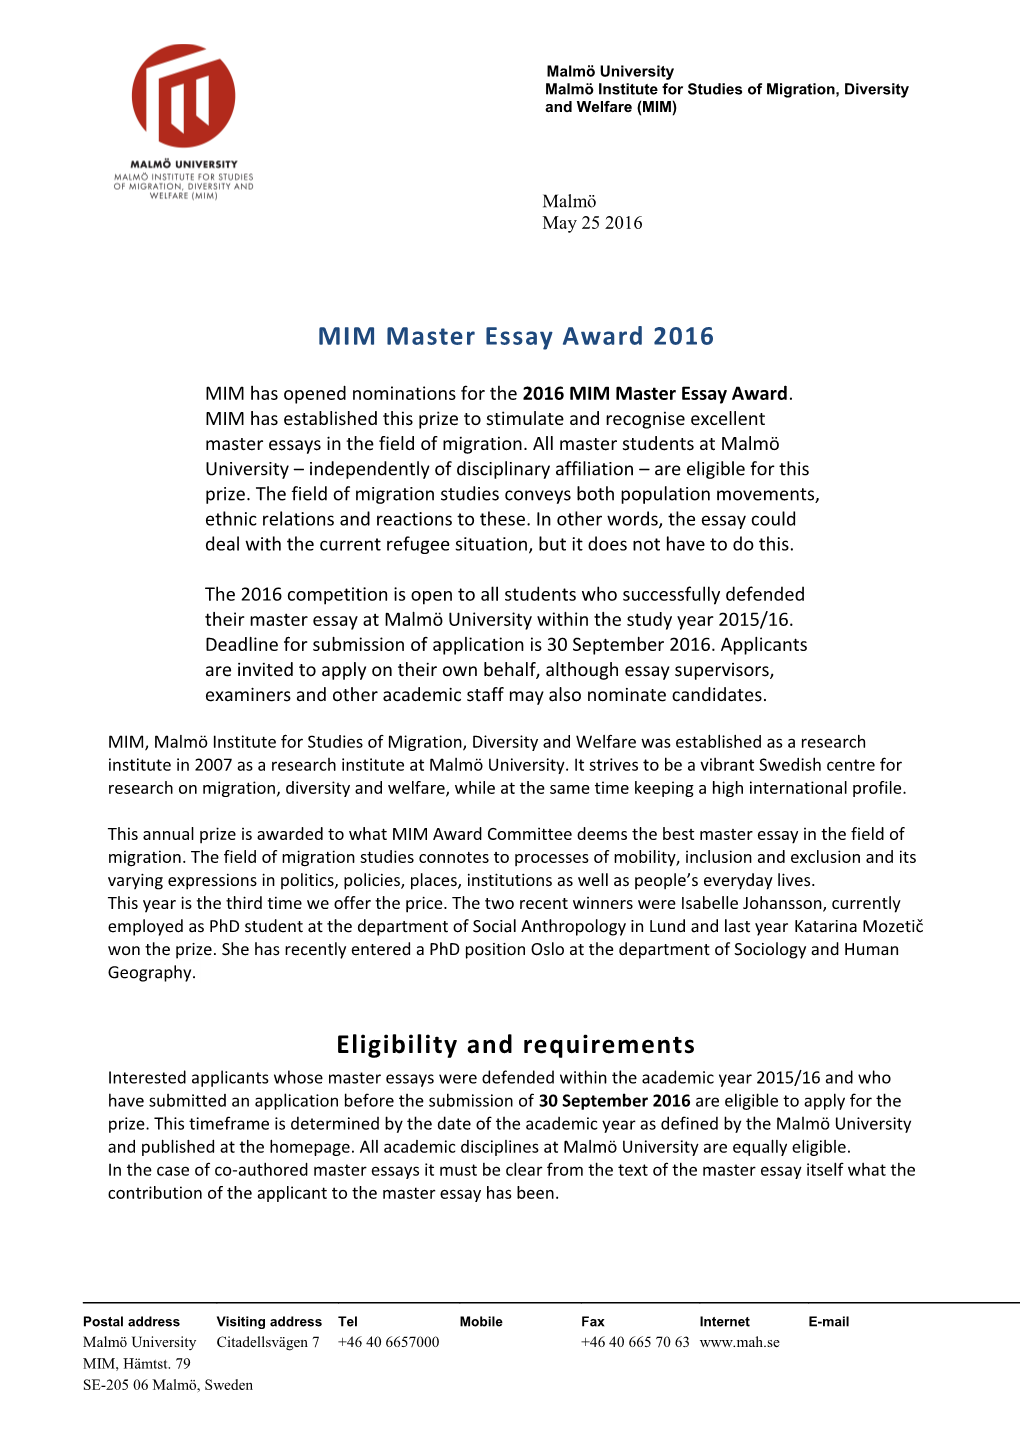 MIM Master Essay Award 2016